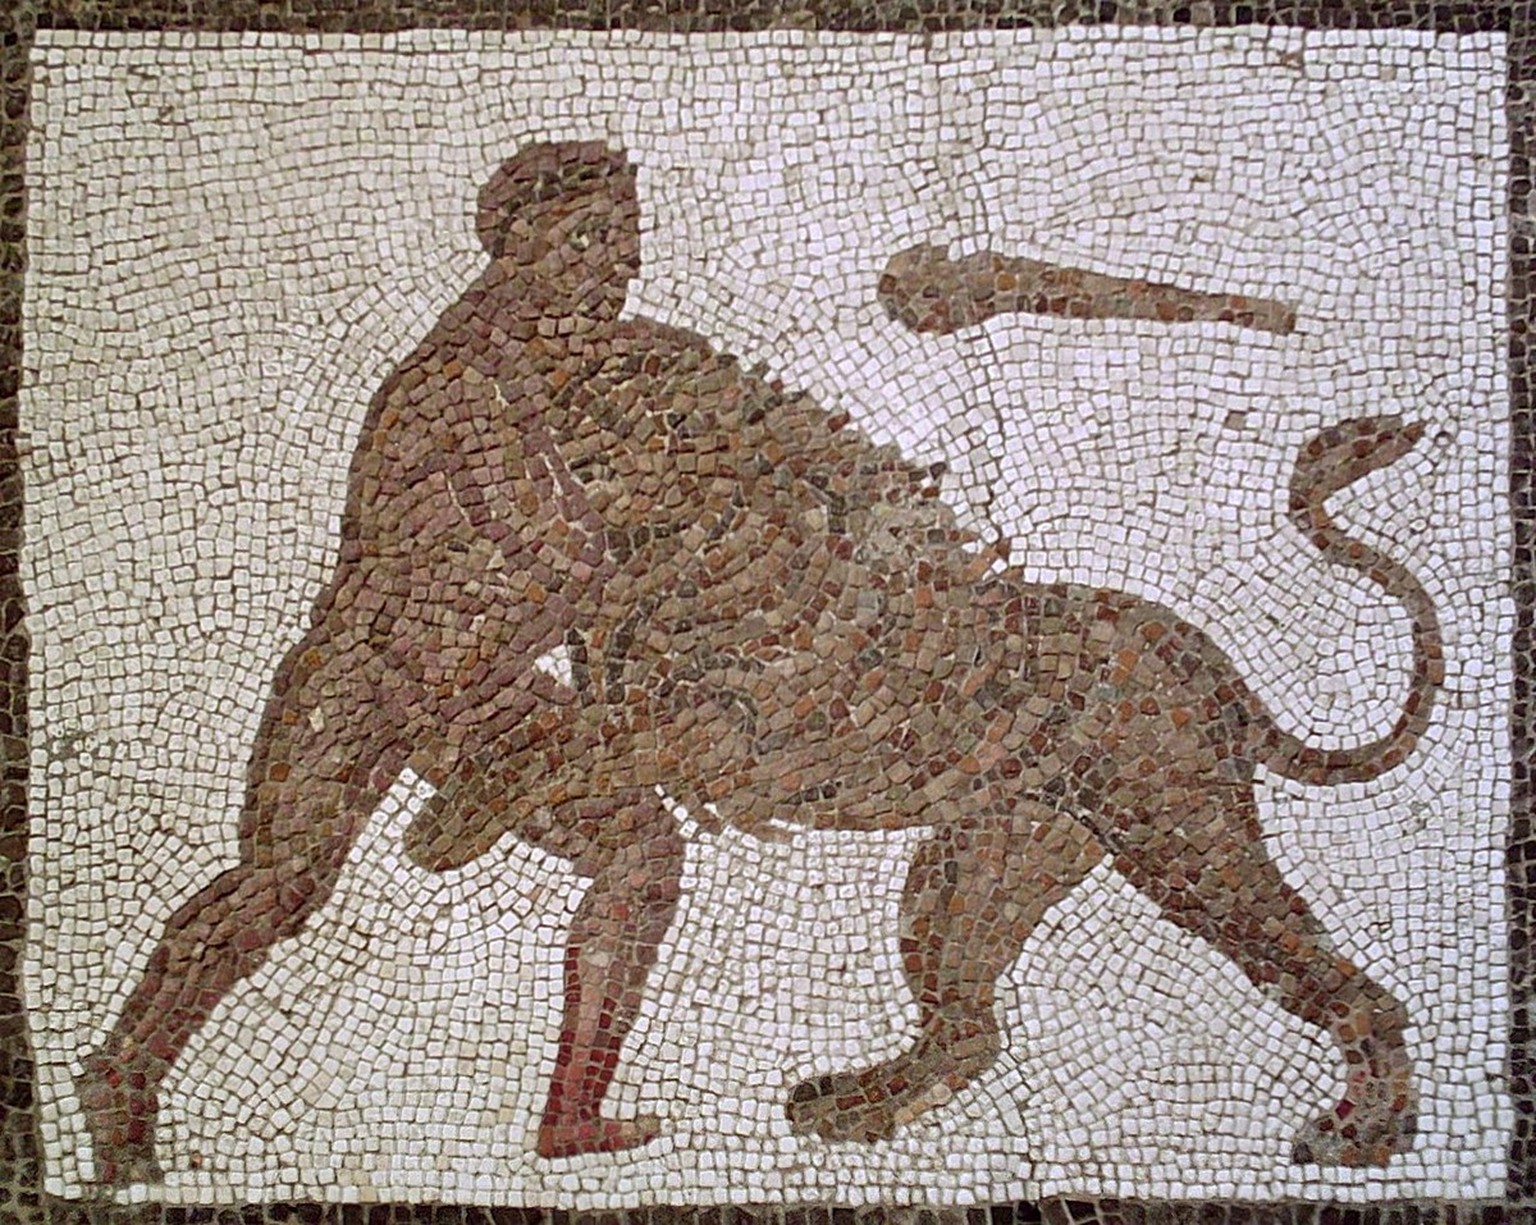 Herakles und der Nemeïsche Löwe. Römisches Mosaik aus Llíria, erste Hälfte 3. Jahrhundert, Provinz Valencia, Spanien. Eine Momentaufnahme par excellence: Wie der Kampf ausgeht, ist offen, und das Mark ...